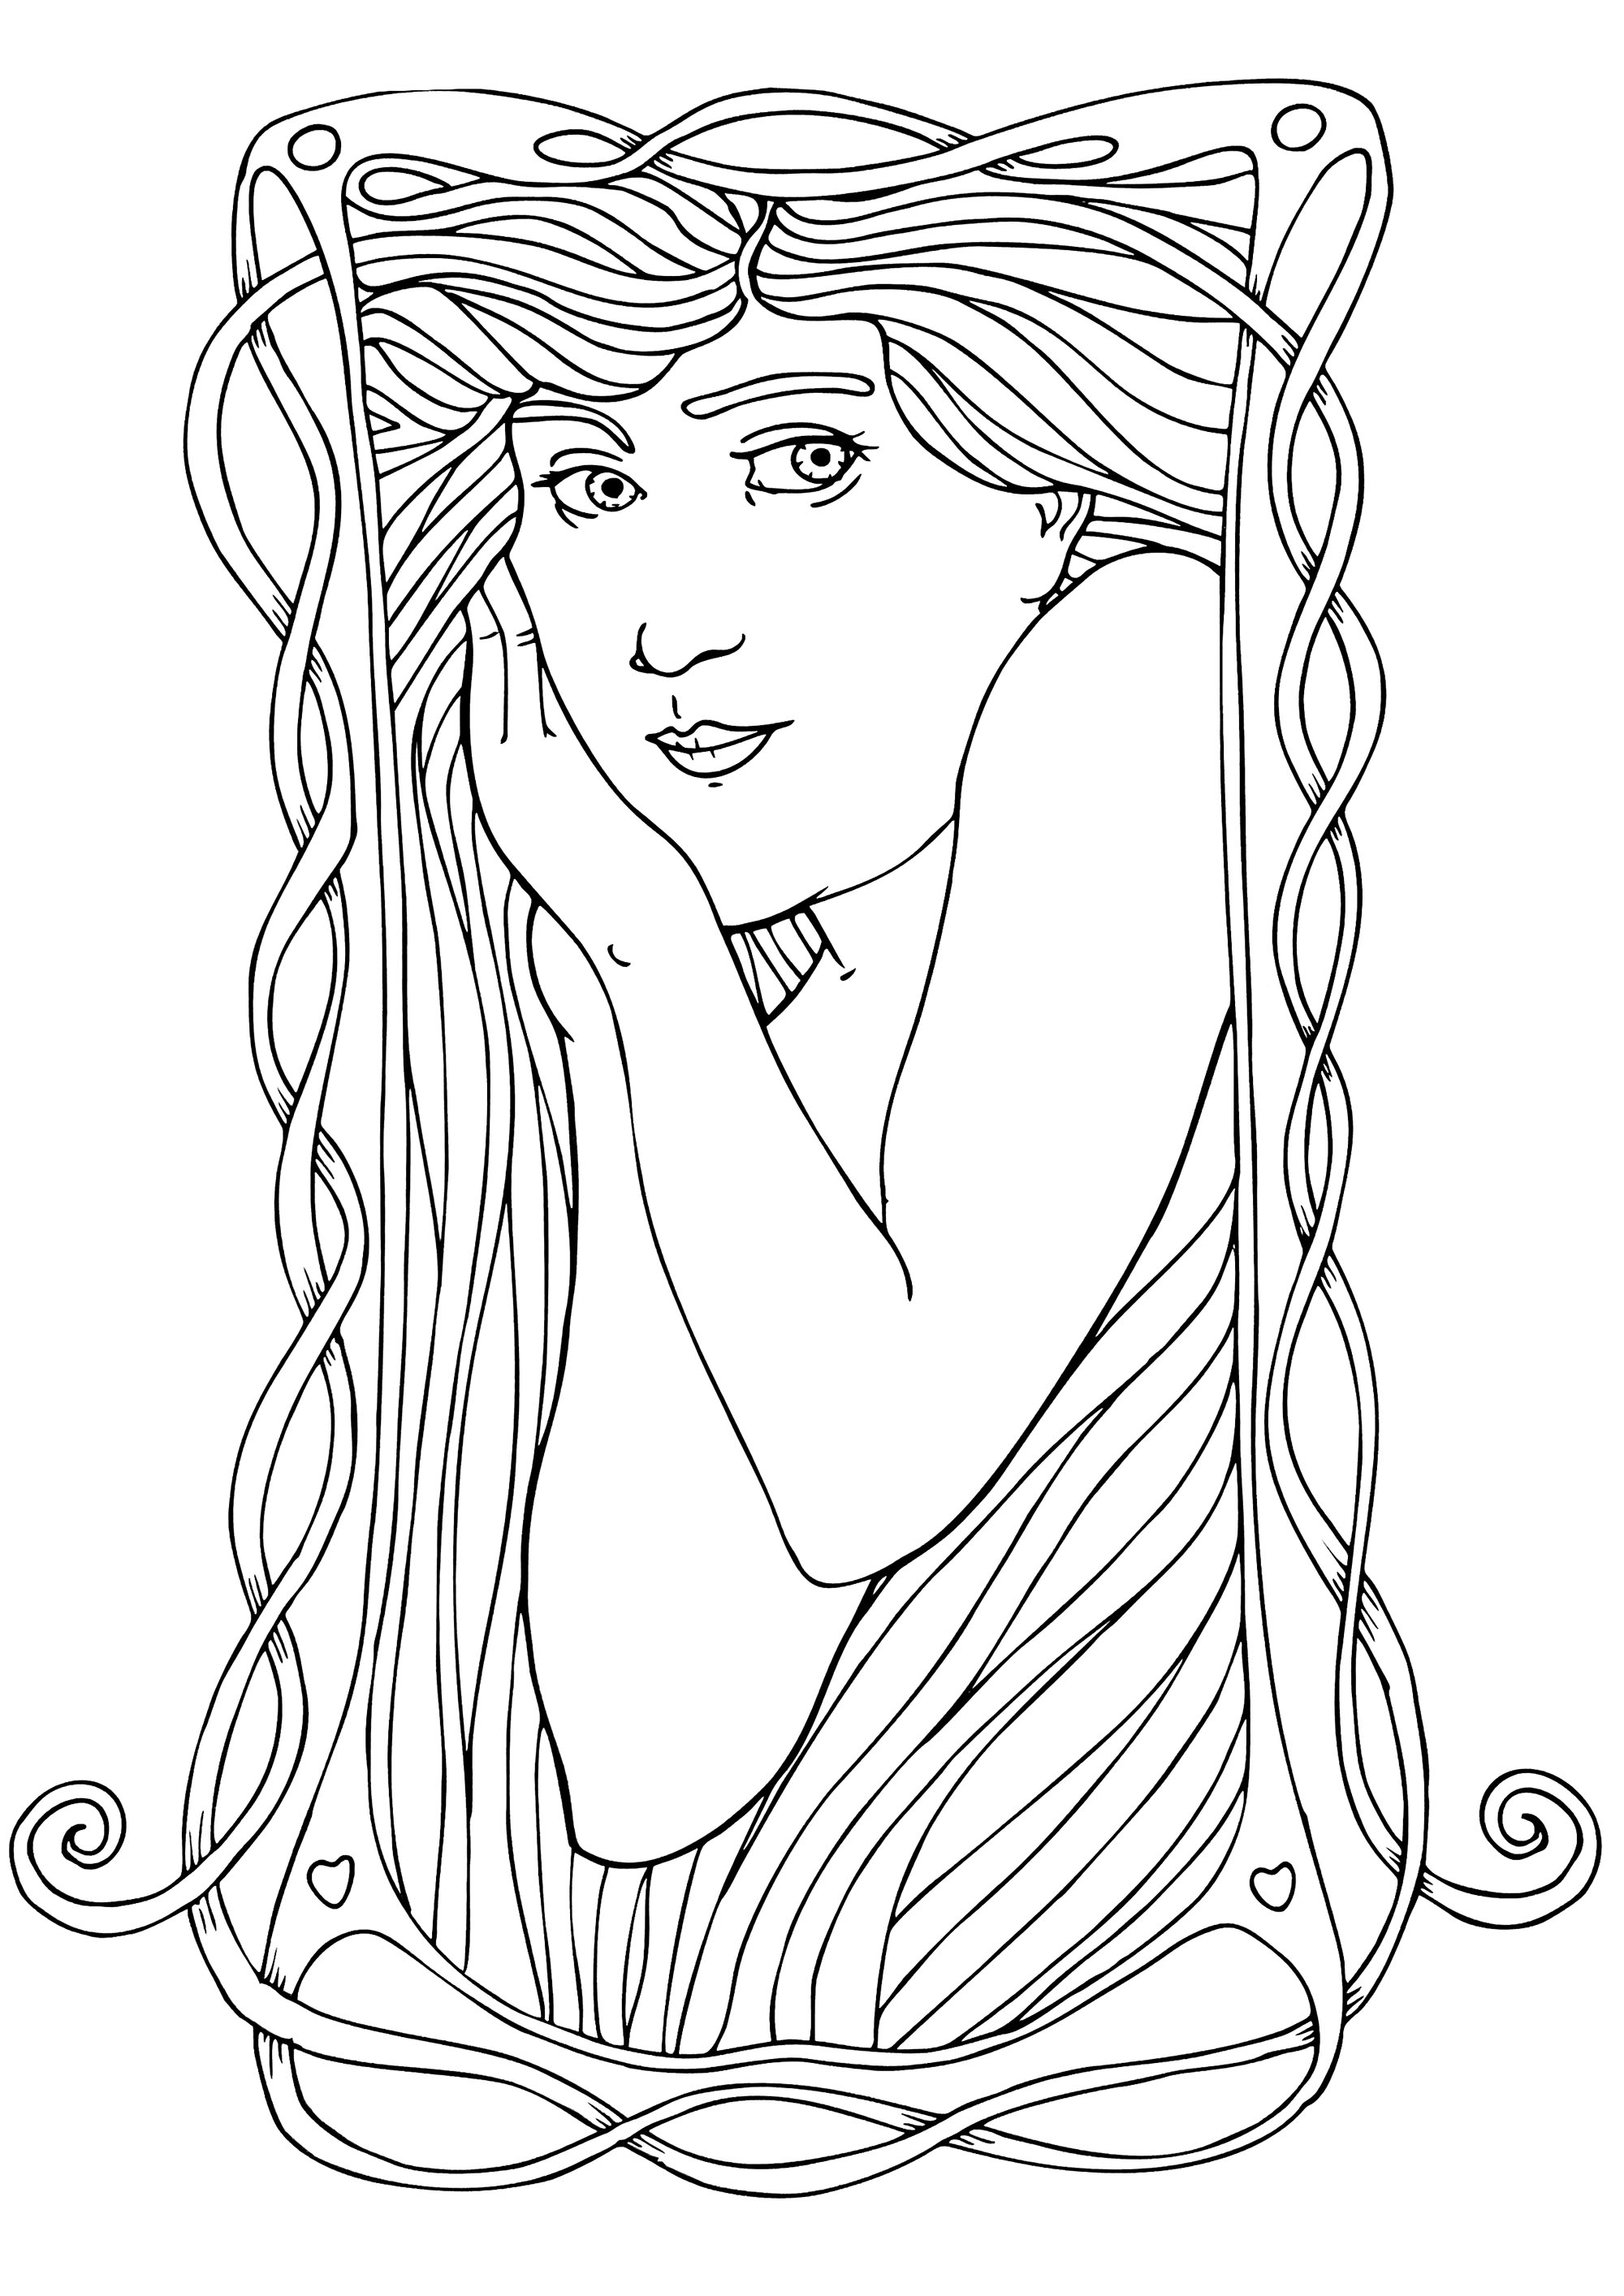 Jugendstil Woman - Einfach. Darstellung einer Frau im Jugendstil, die den Stil von Alfons Mucha wiedergibt, mit wenigen Details, Künstler : Art'Isabelle